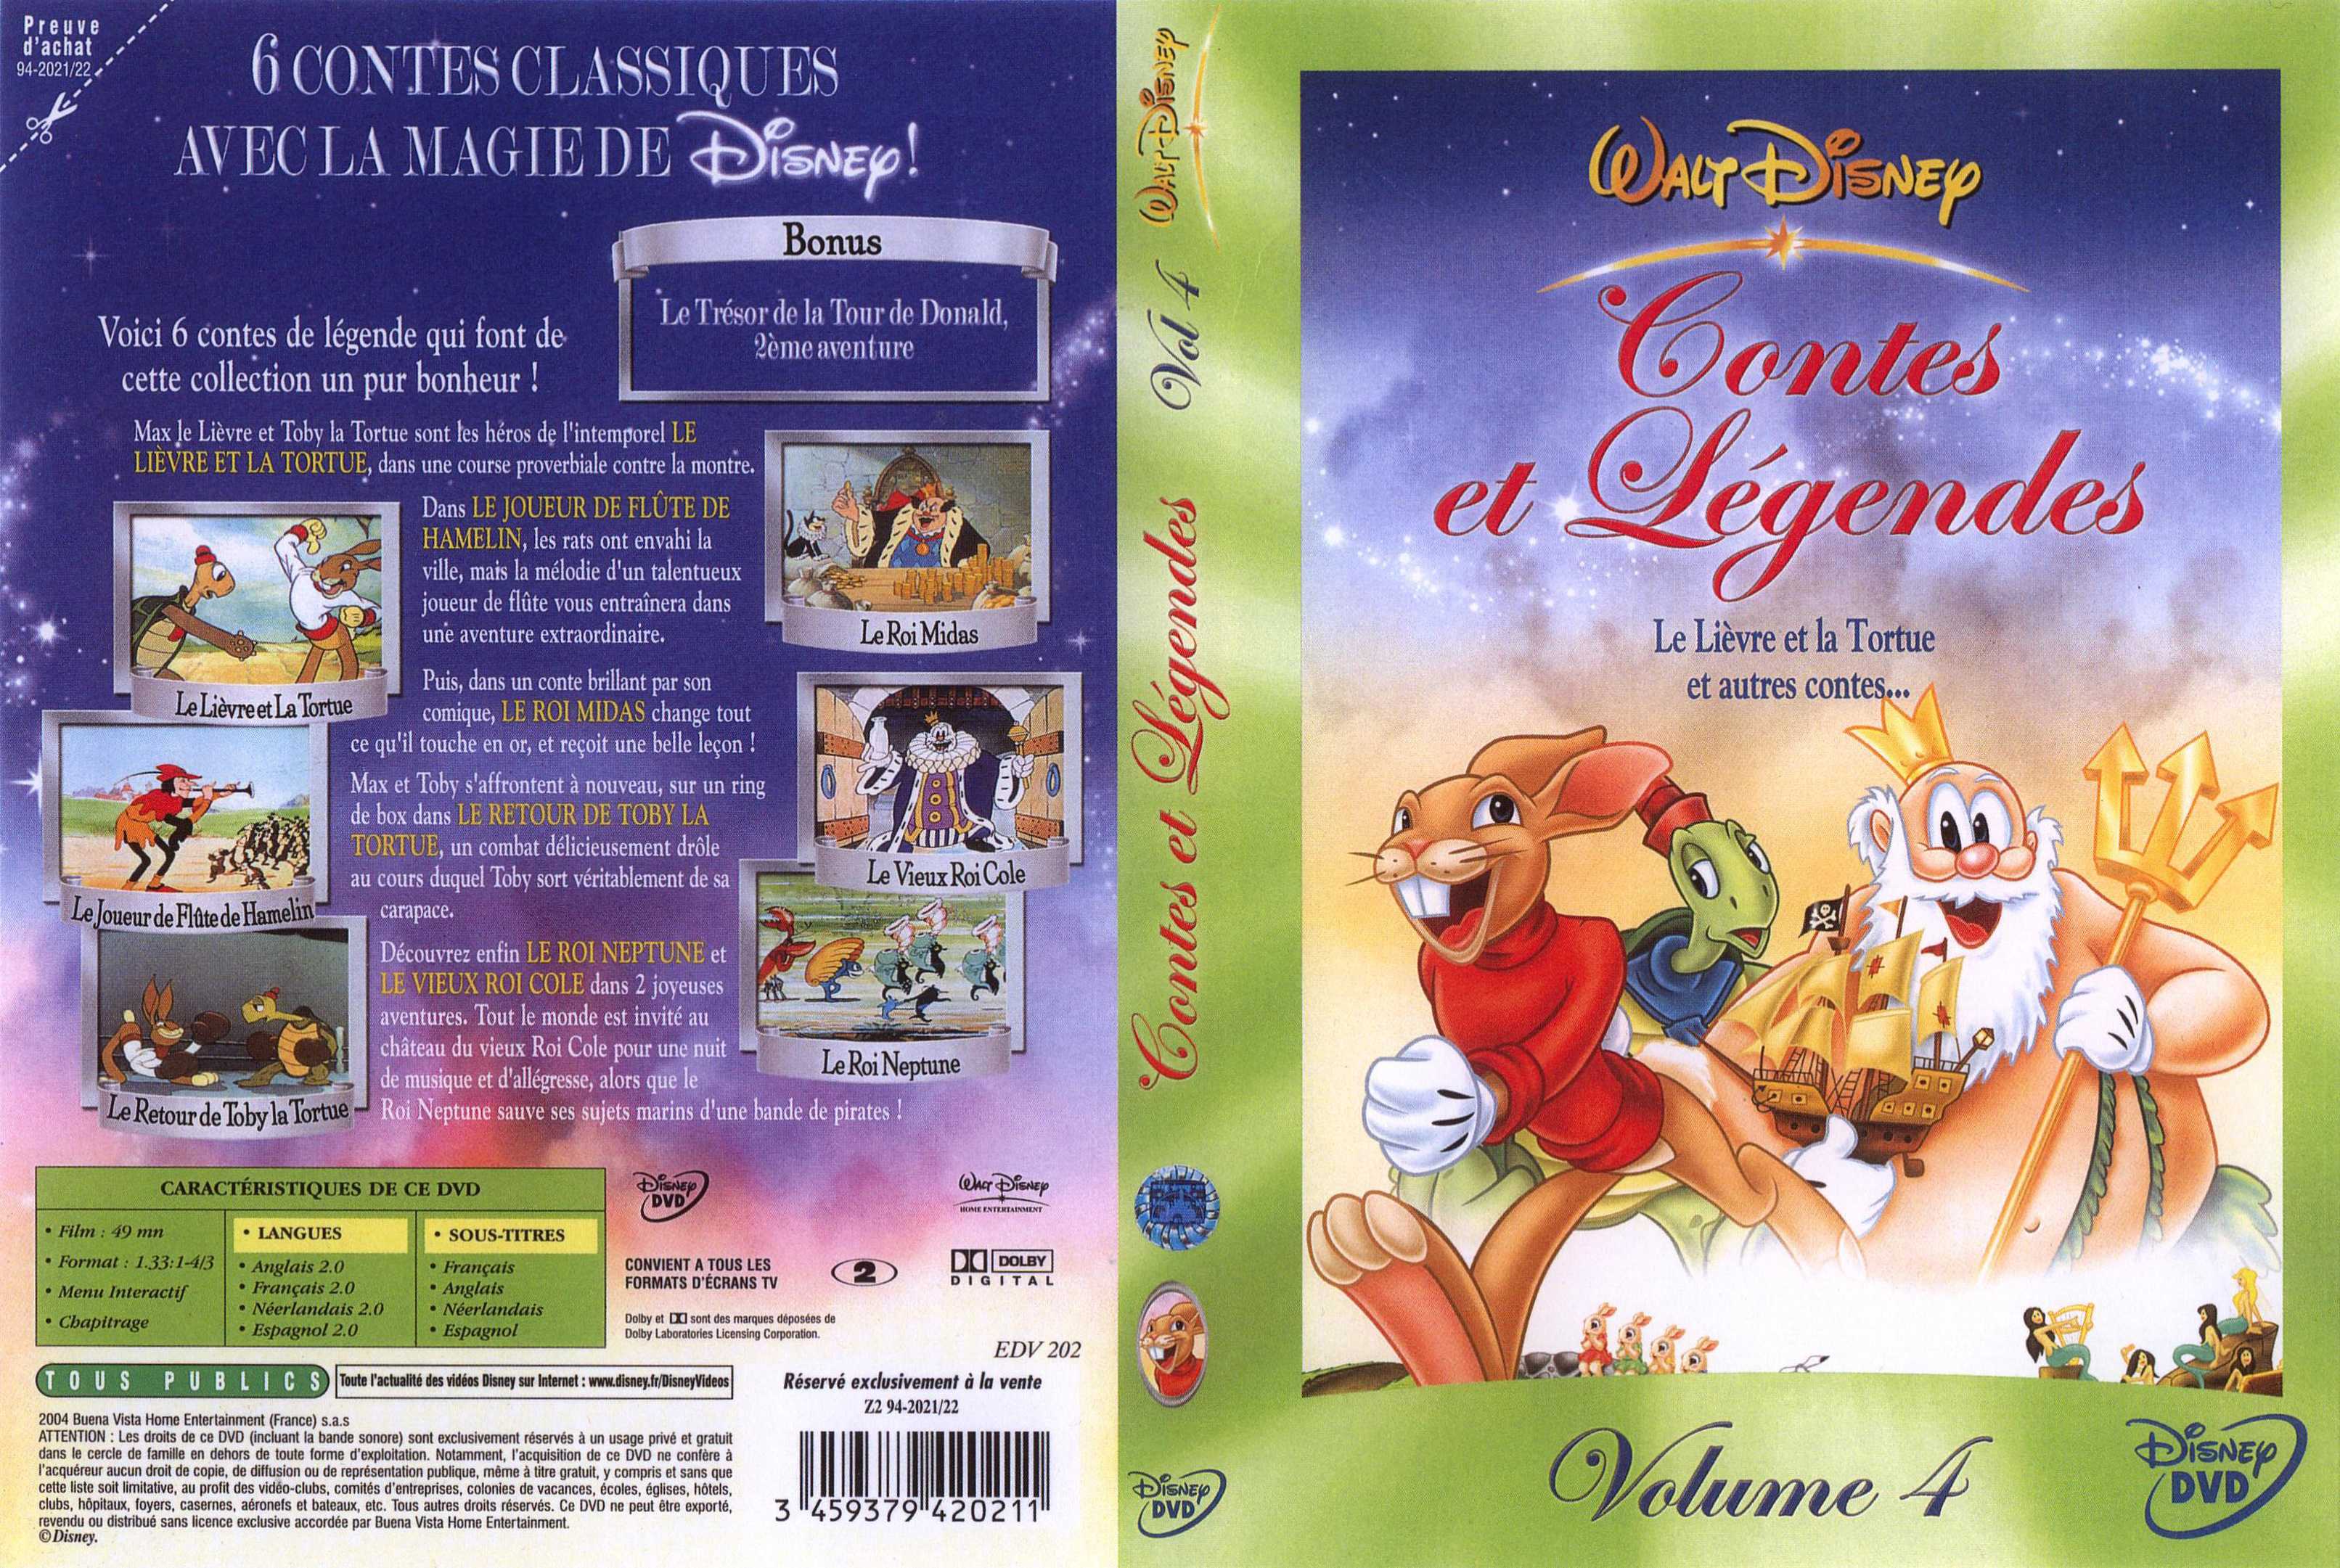 Jaquette DVD Contes et legendes 4 v2